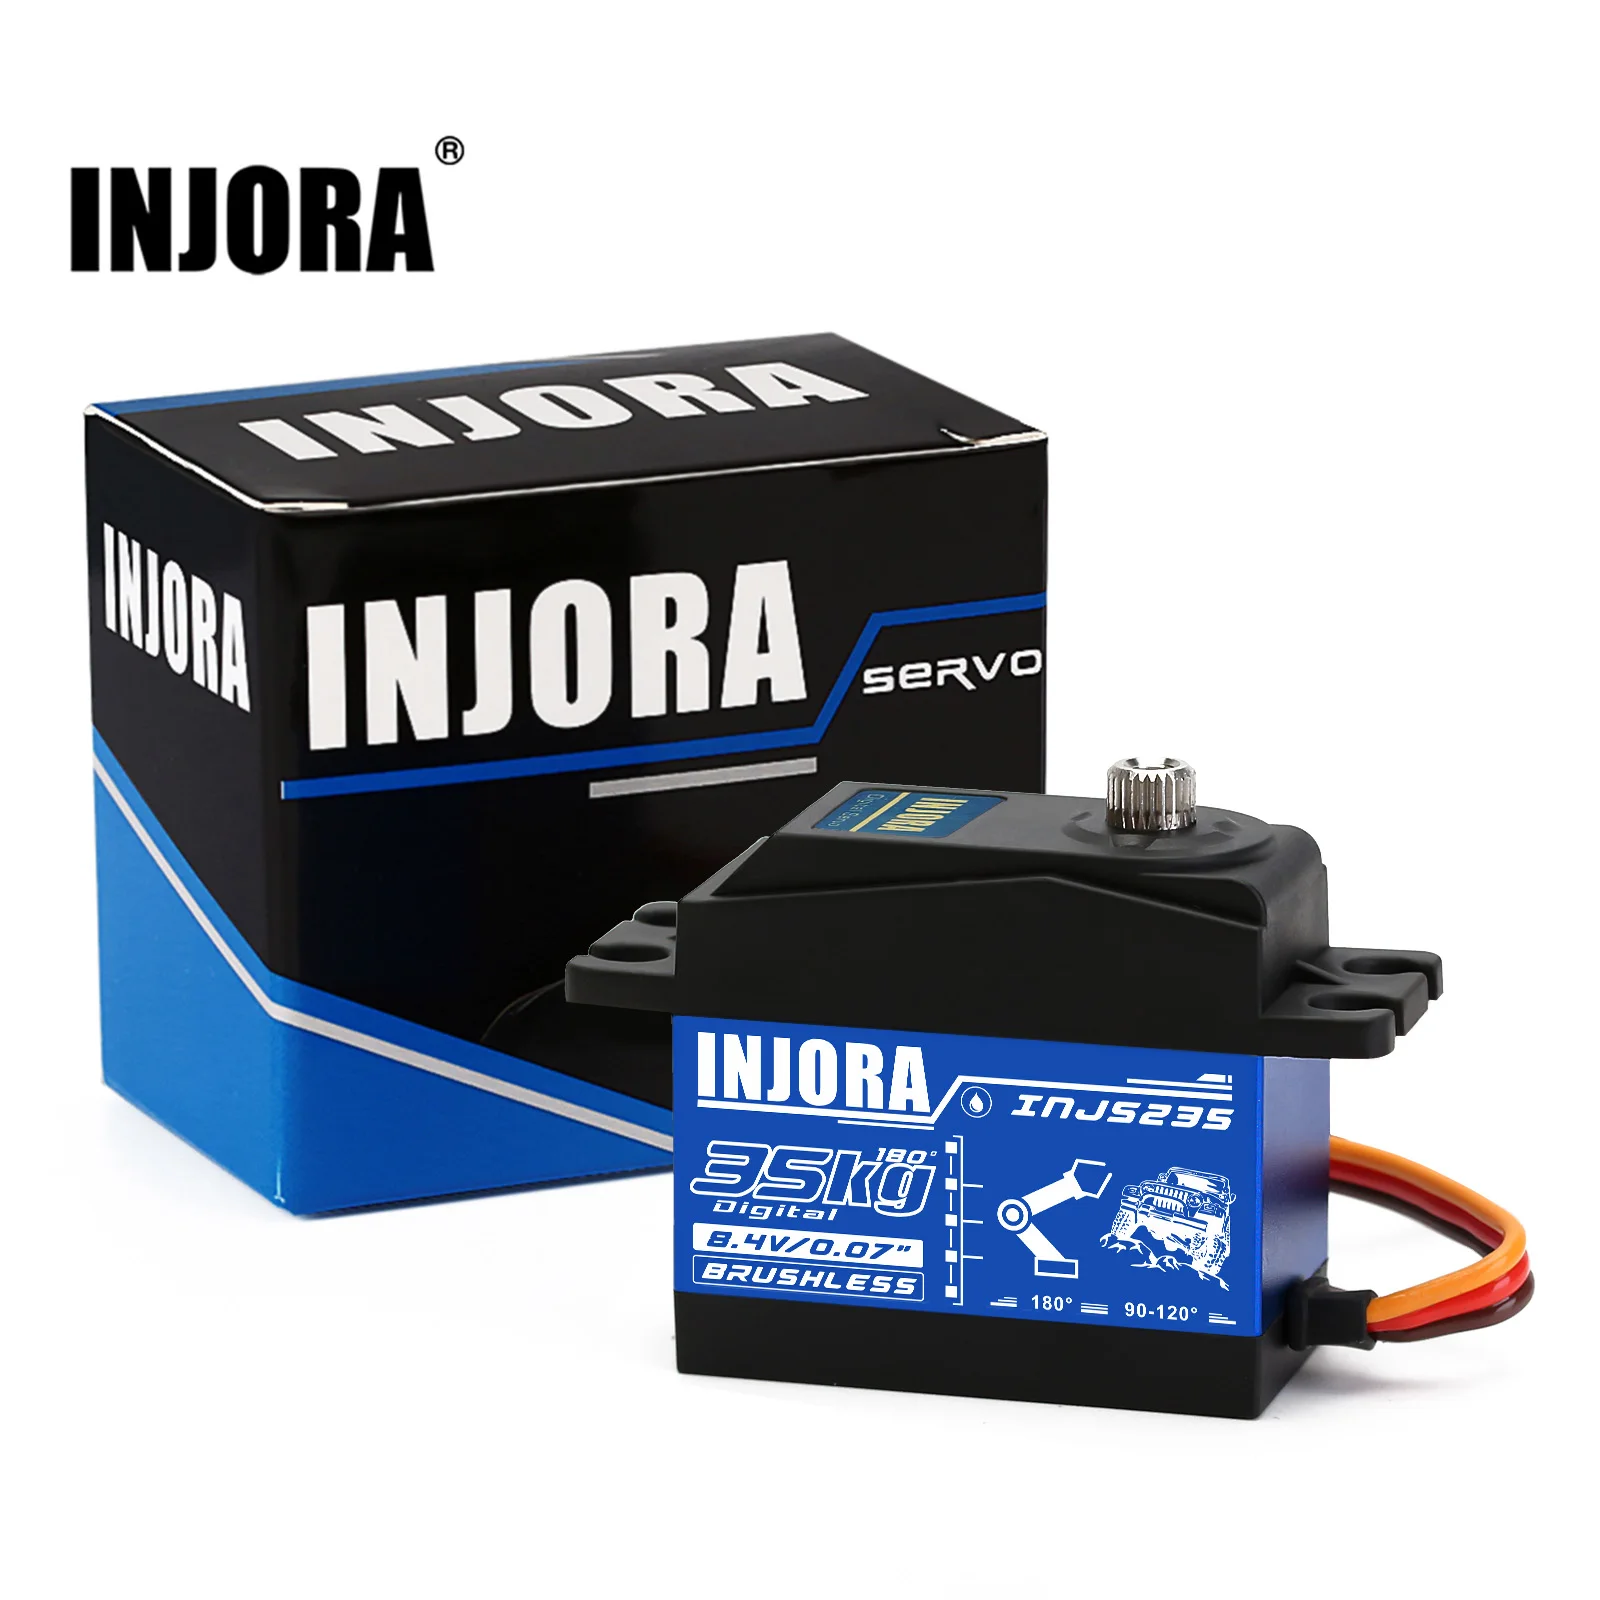 INJORA-INJS235-35KG-Waterproof-Brushless-Servo-High-Voltage-Metal-Gear-Large-Torque-Digital-Servo-For-1.webp